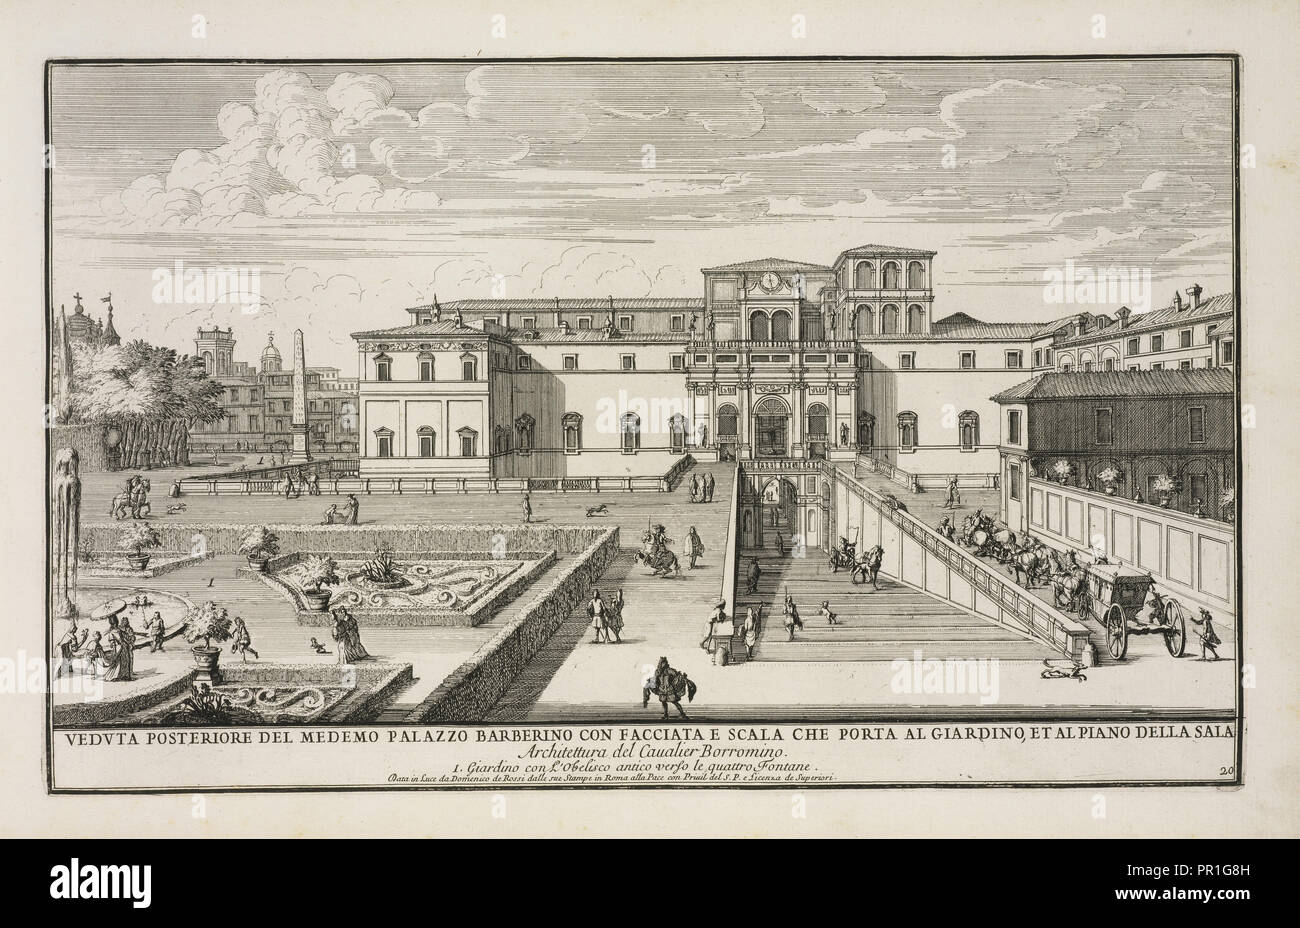 Veduta posteriore del medemo Palazzo Barberino con facciata e scala che porta al giardino et al piano della sala, Il nvovo Stock Photo